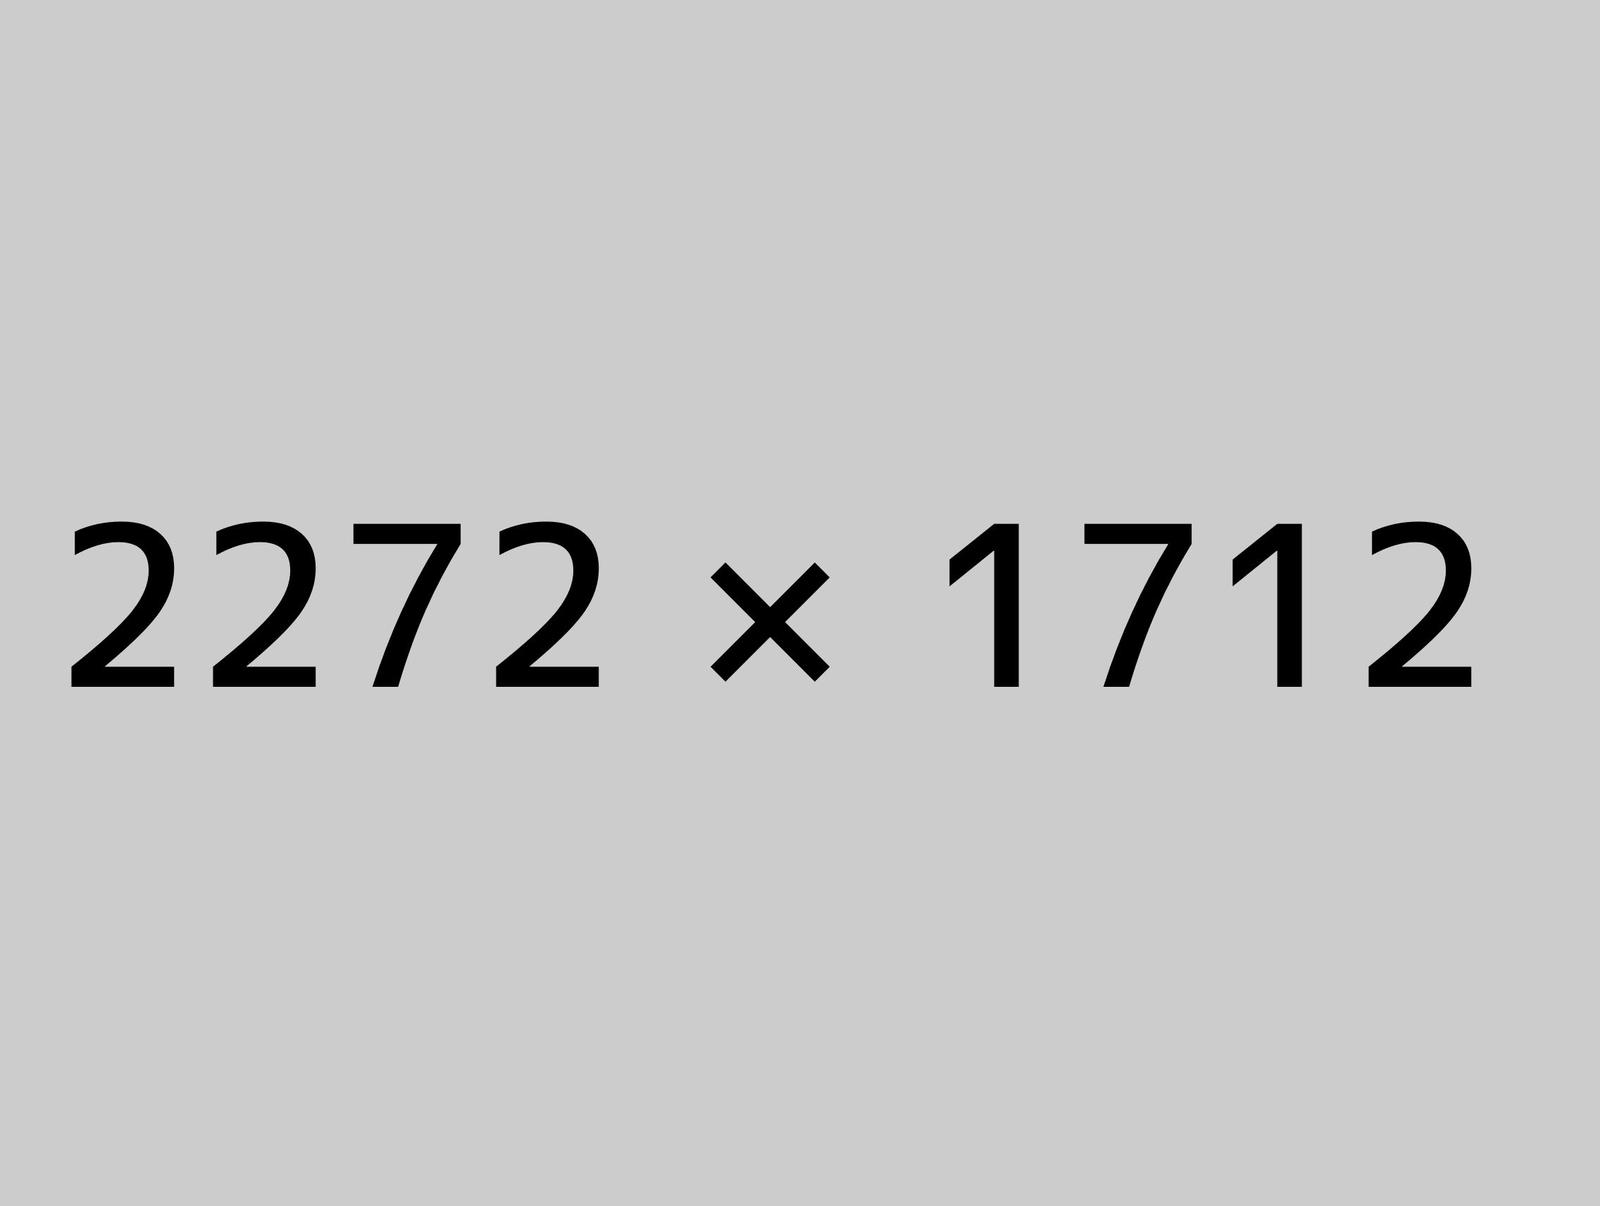 2272x1712